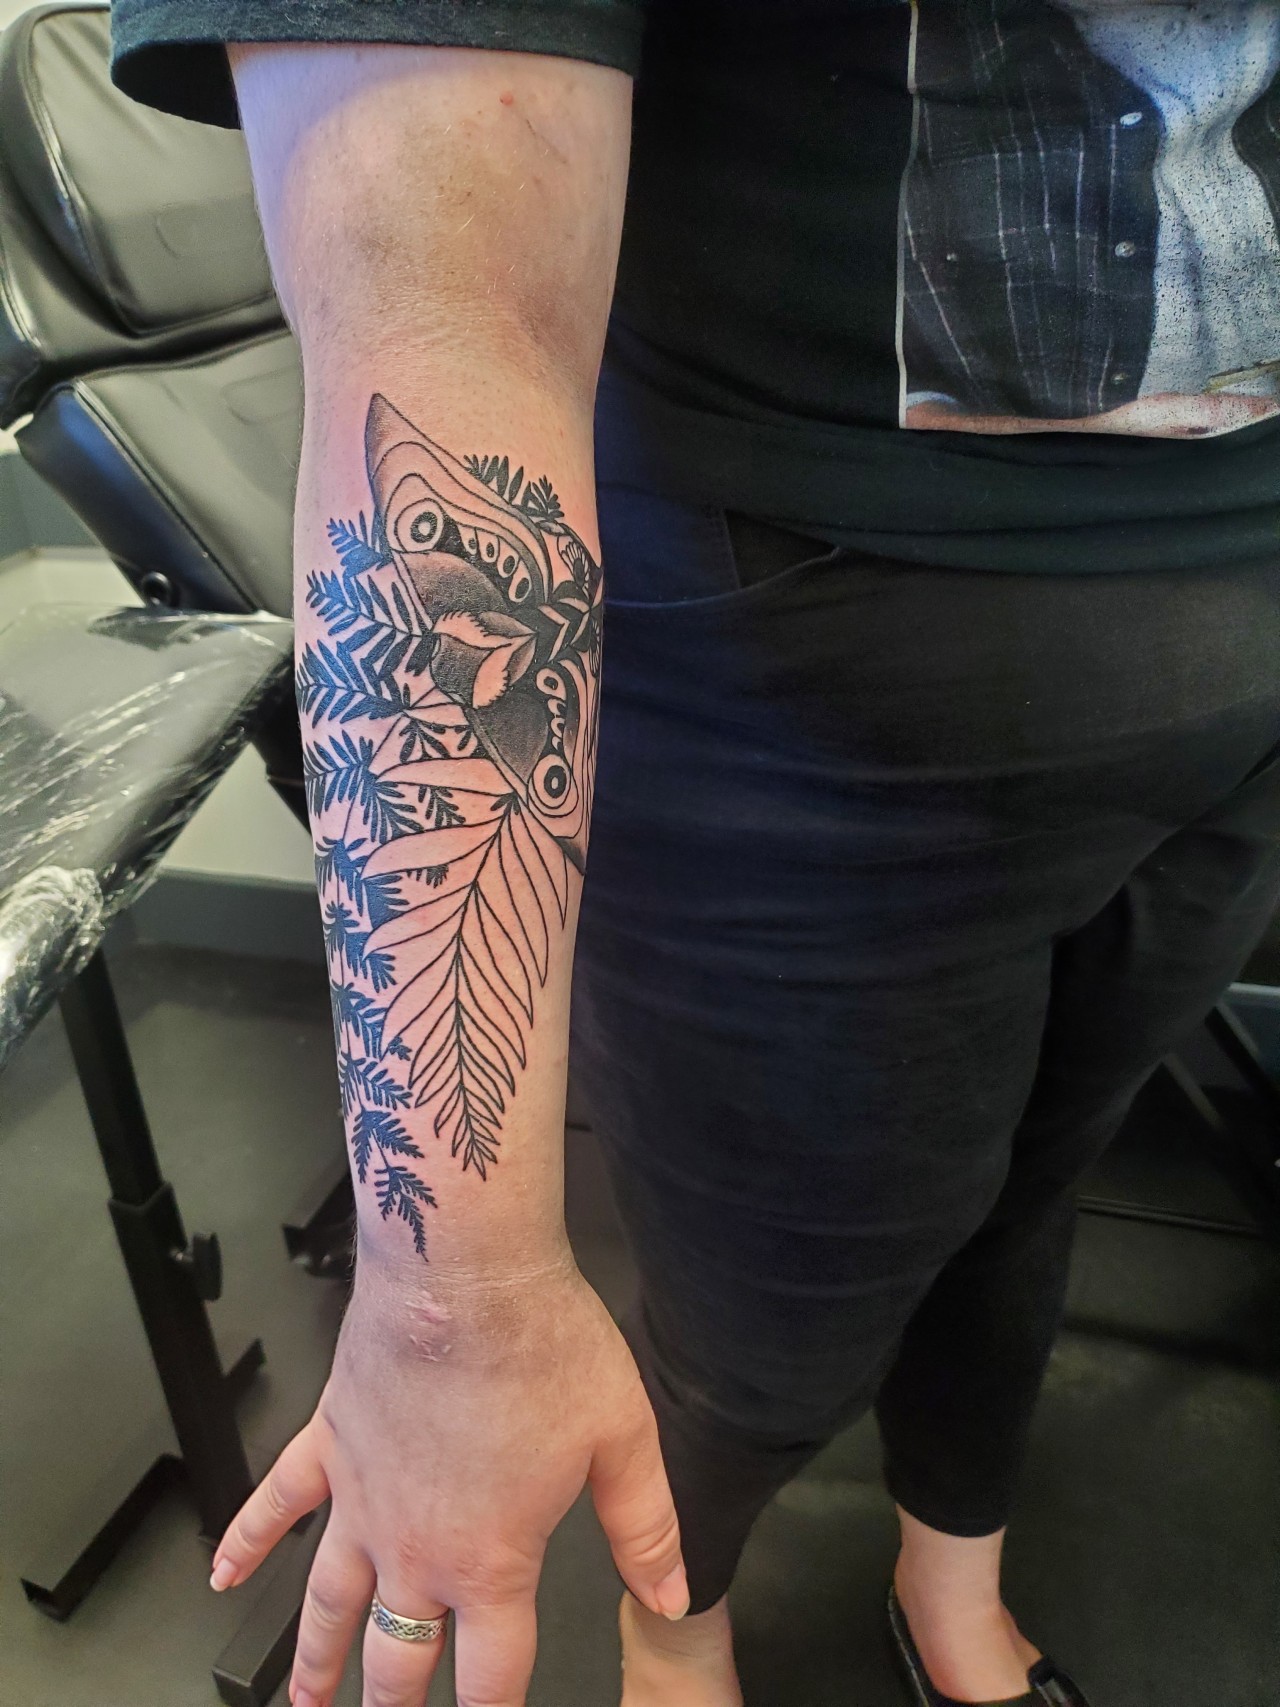 Ellie's tattoo, Fandom